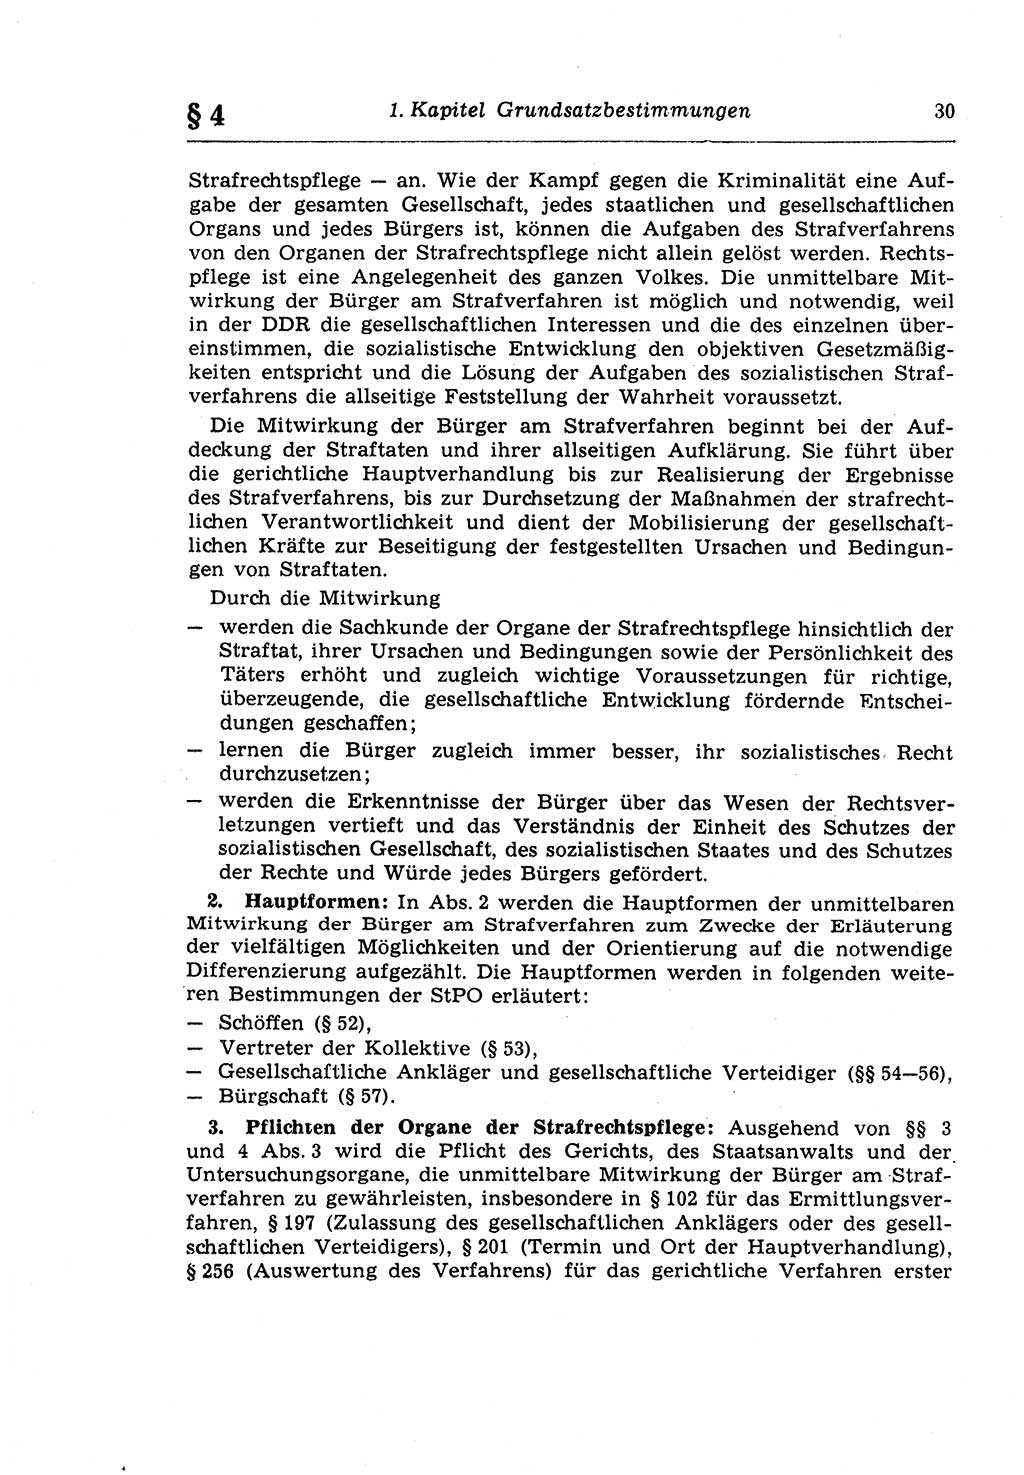 Strafprozeßrecht der DDR (Deutsche Demokratische Republik), Lehrkommentar zur Strafprozeßordnung (StPO) 1968, Seite 30 (Strafprozeßr. DDR Lehrkomm. StPO 19688, S. 30)